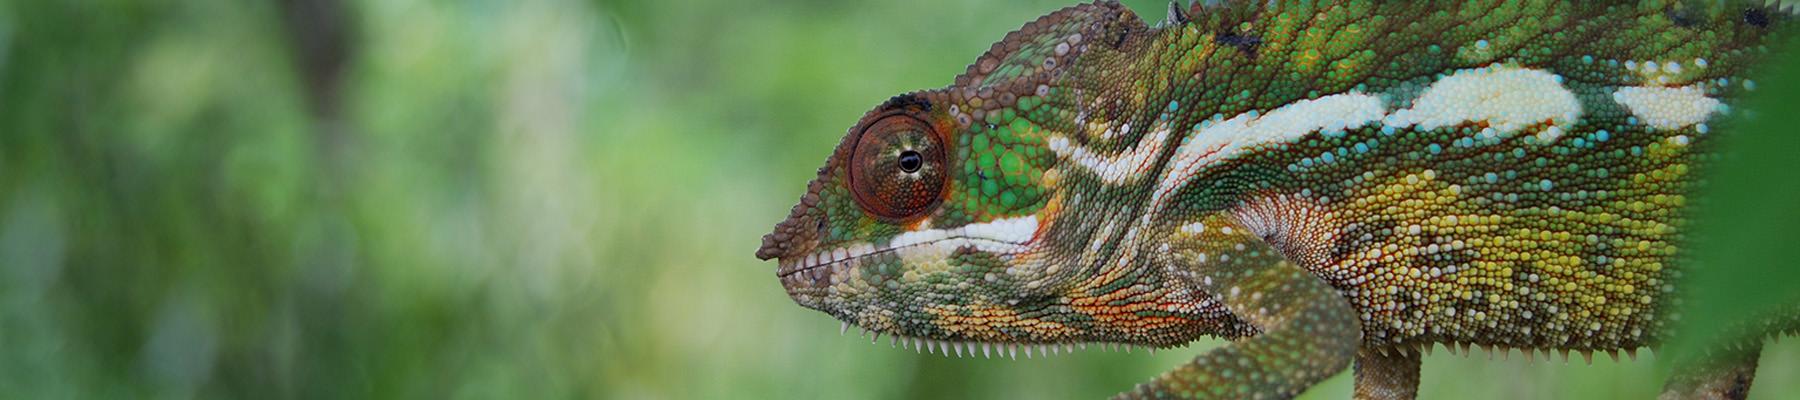 Panther chameleon Furcifer pardalis, Madagascar © WWF / Martina Lippuner